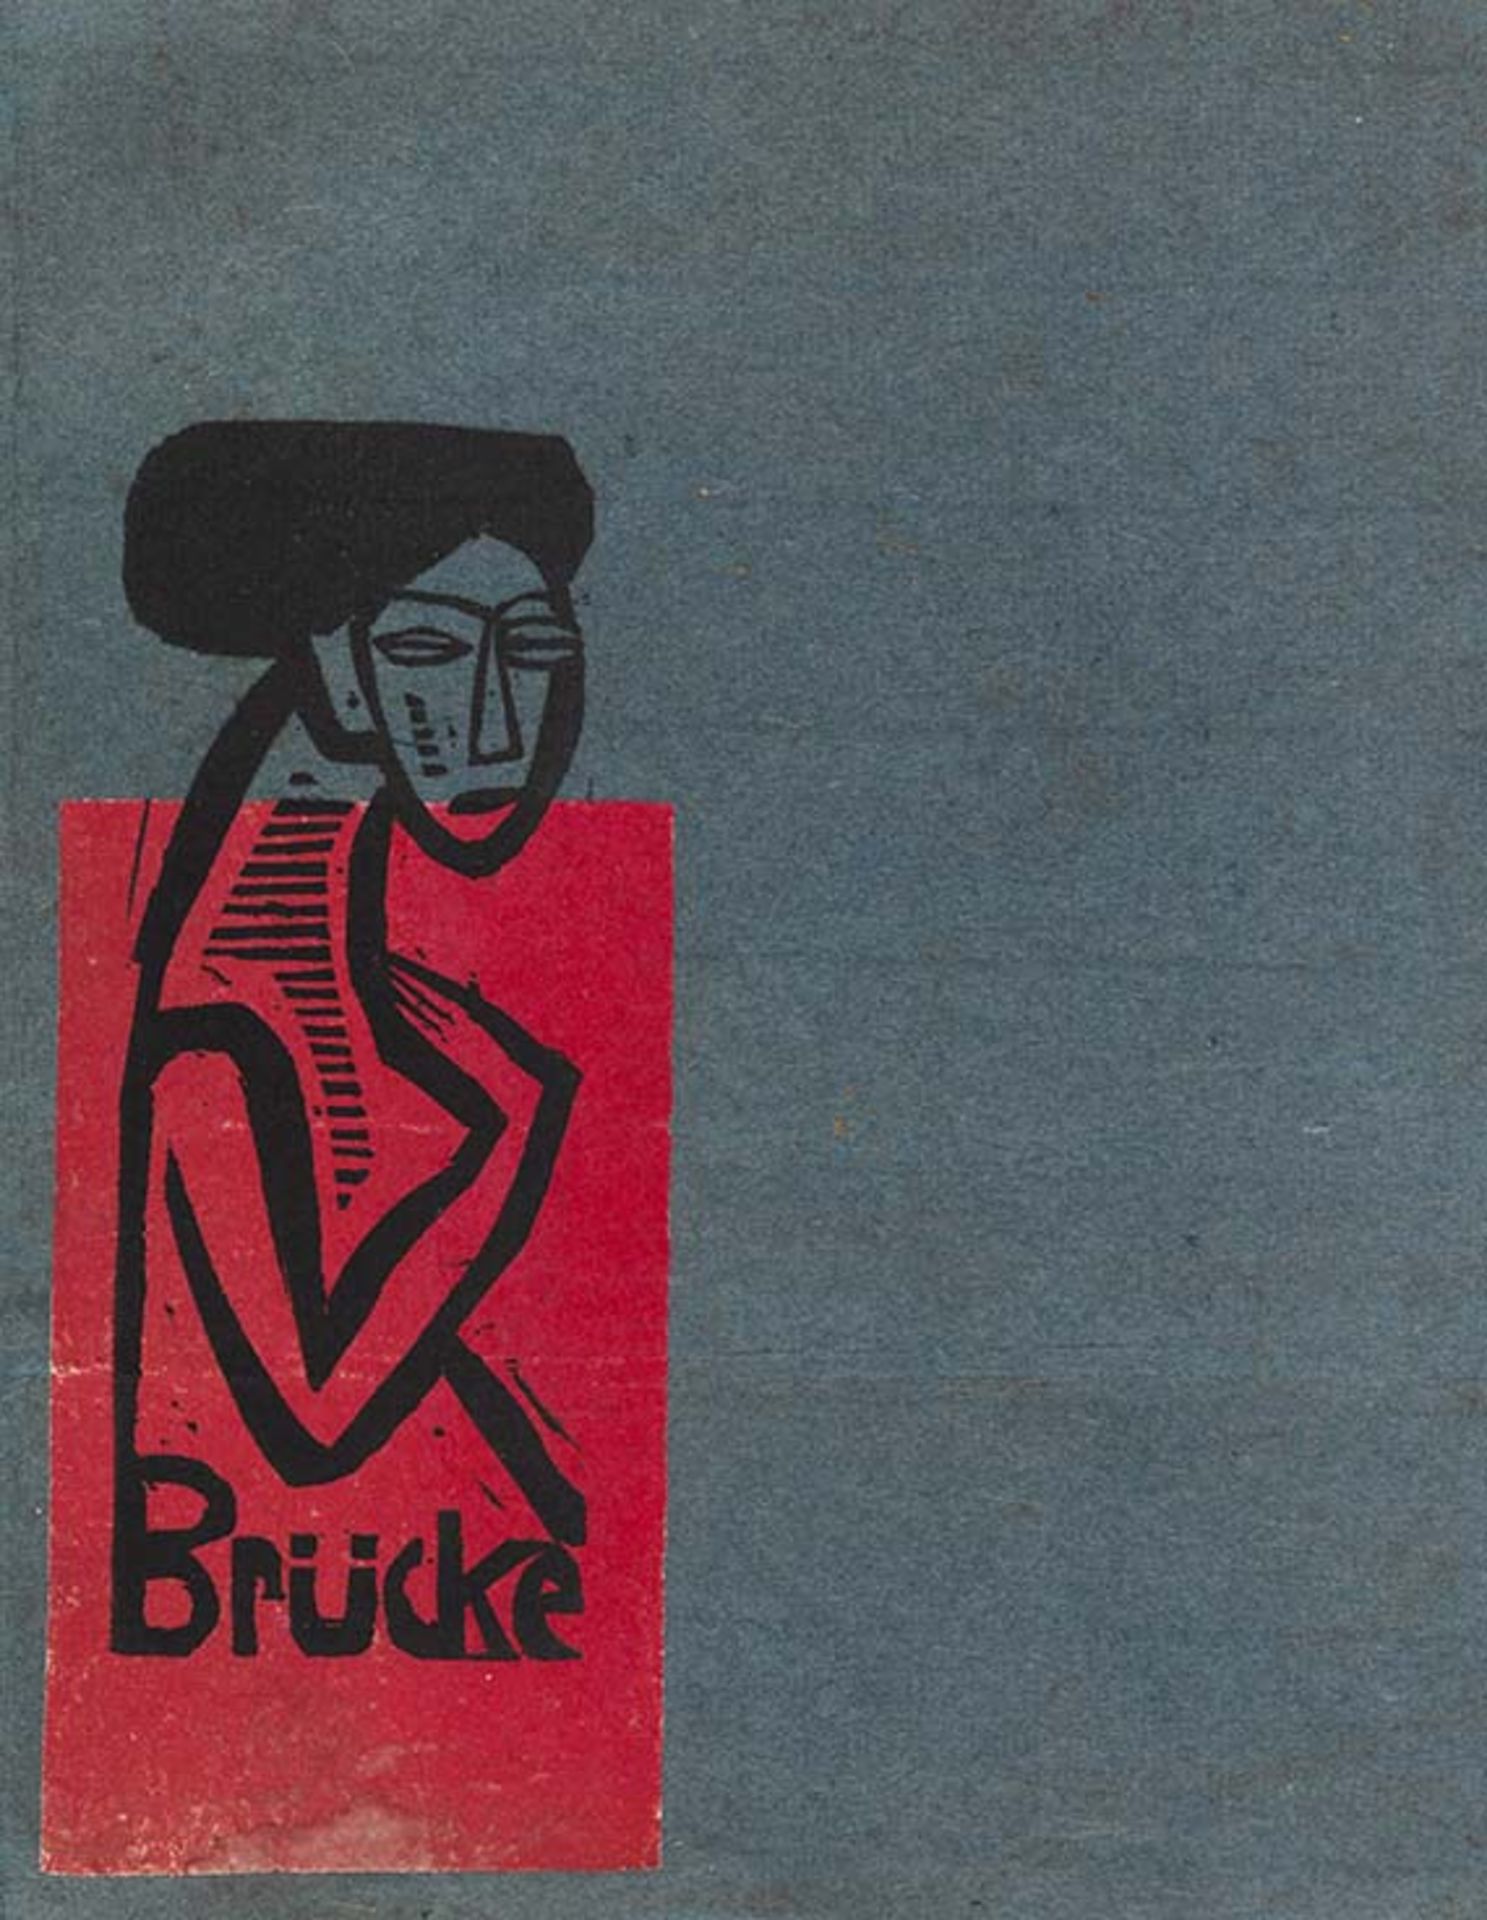 Ausstellungskatalog Katalog für die Ausstellung der Künstlergruppe 'Brücke' in der Galerie